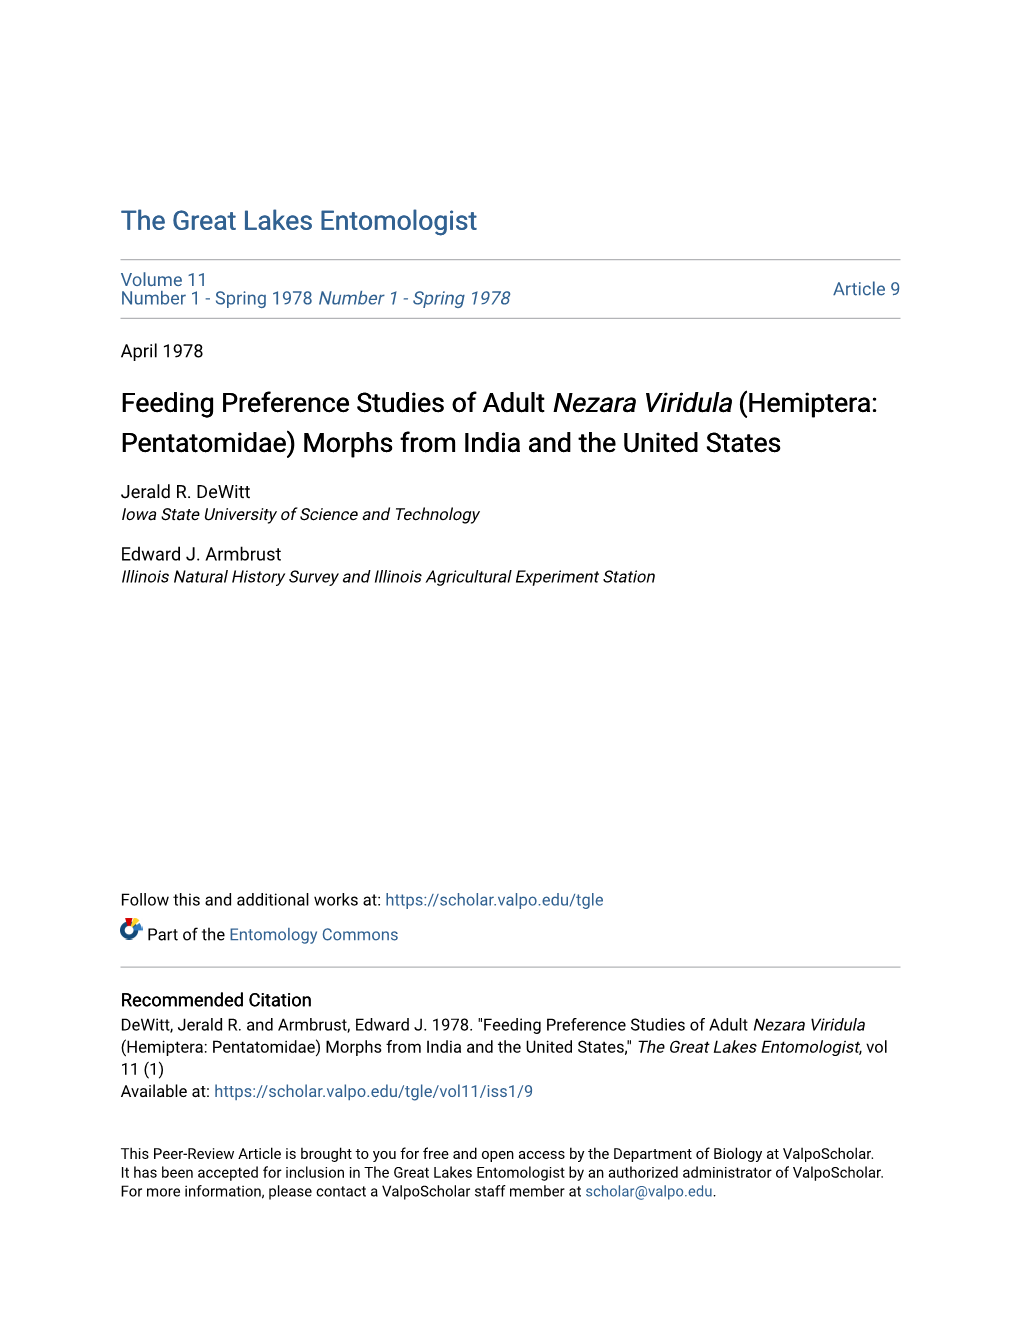 Feeding Preference Studies of Adult Nezara Viridula (Hemiptera: Pentatomidae) Morphs from India and the United States